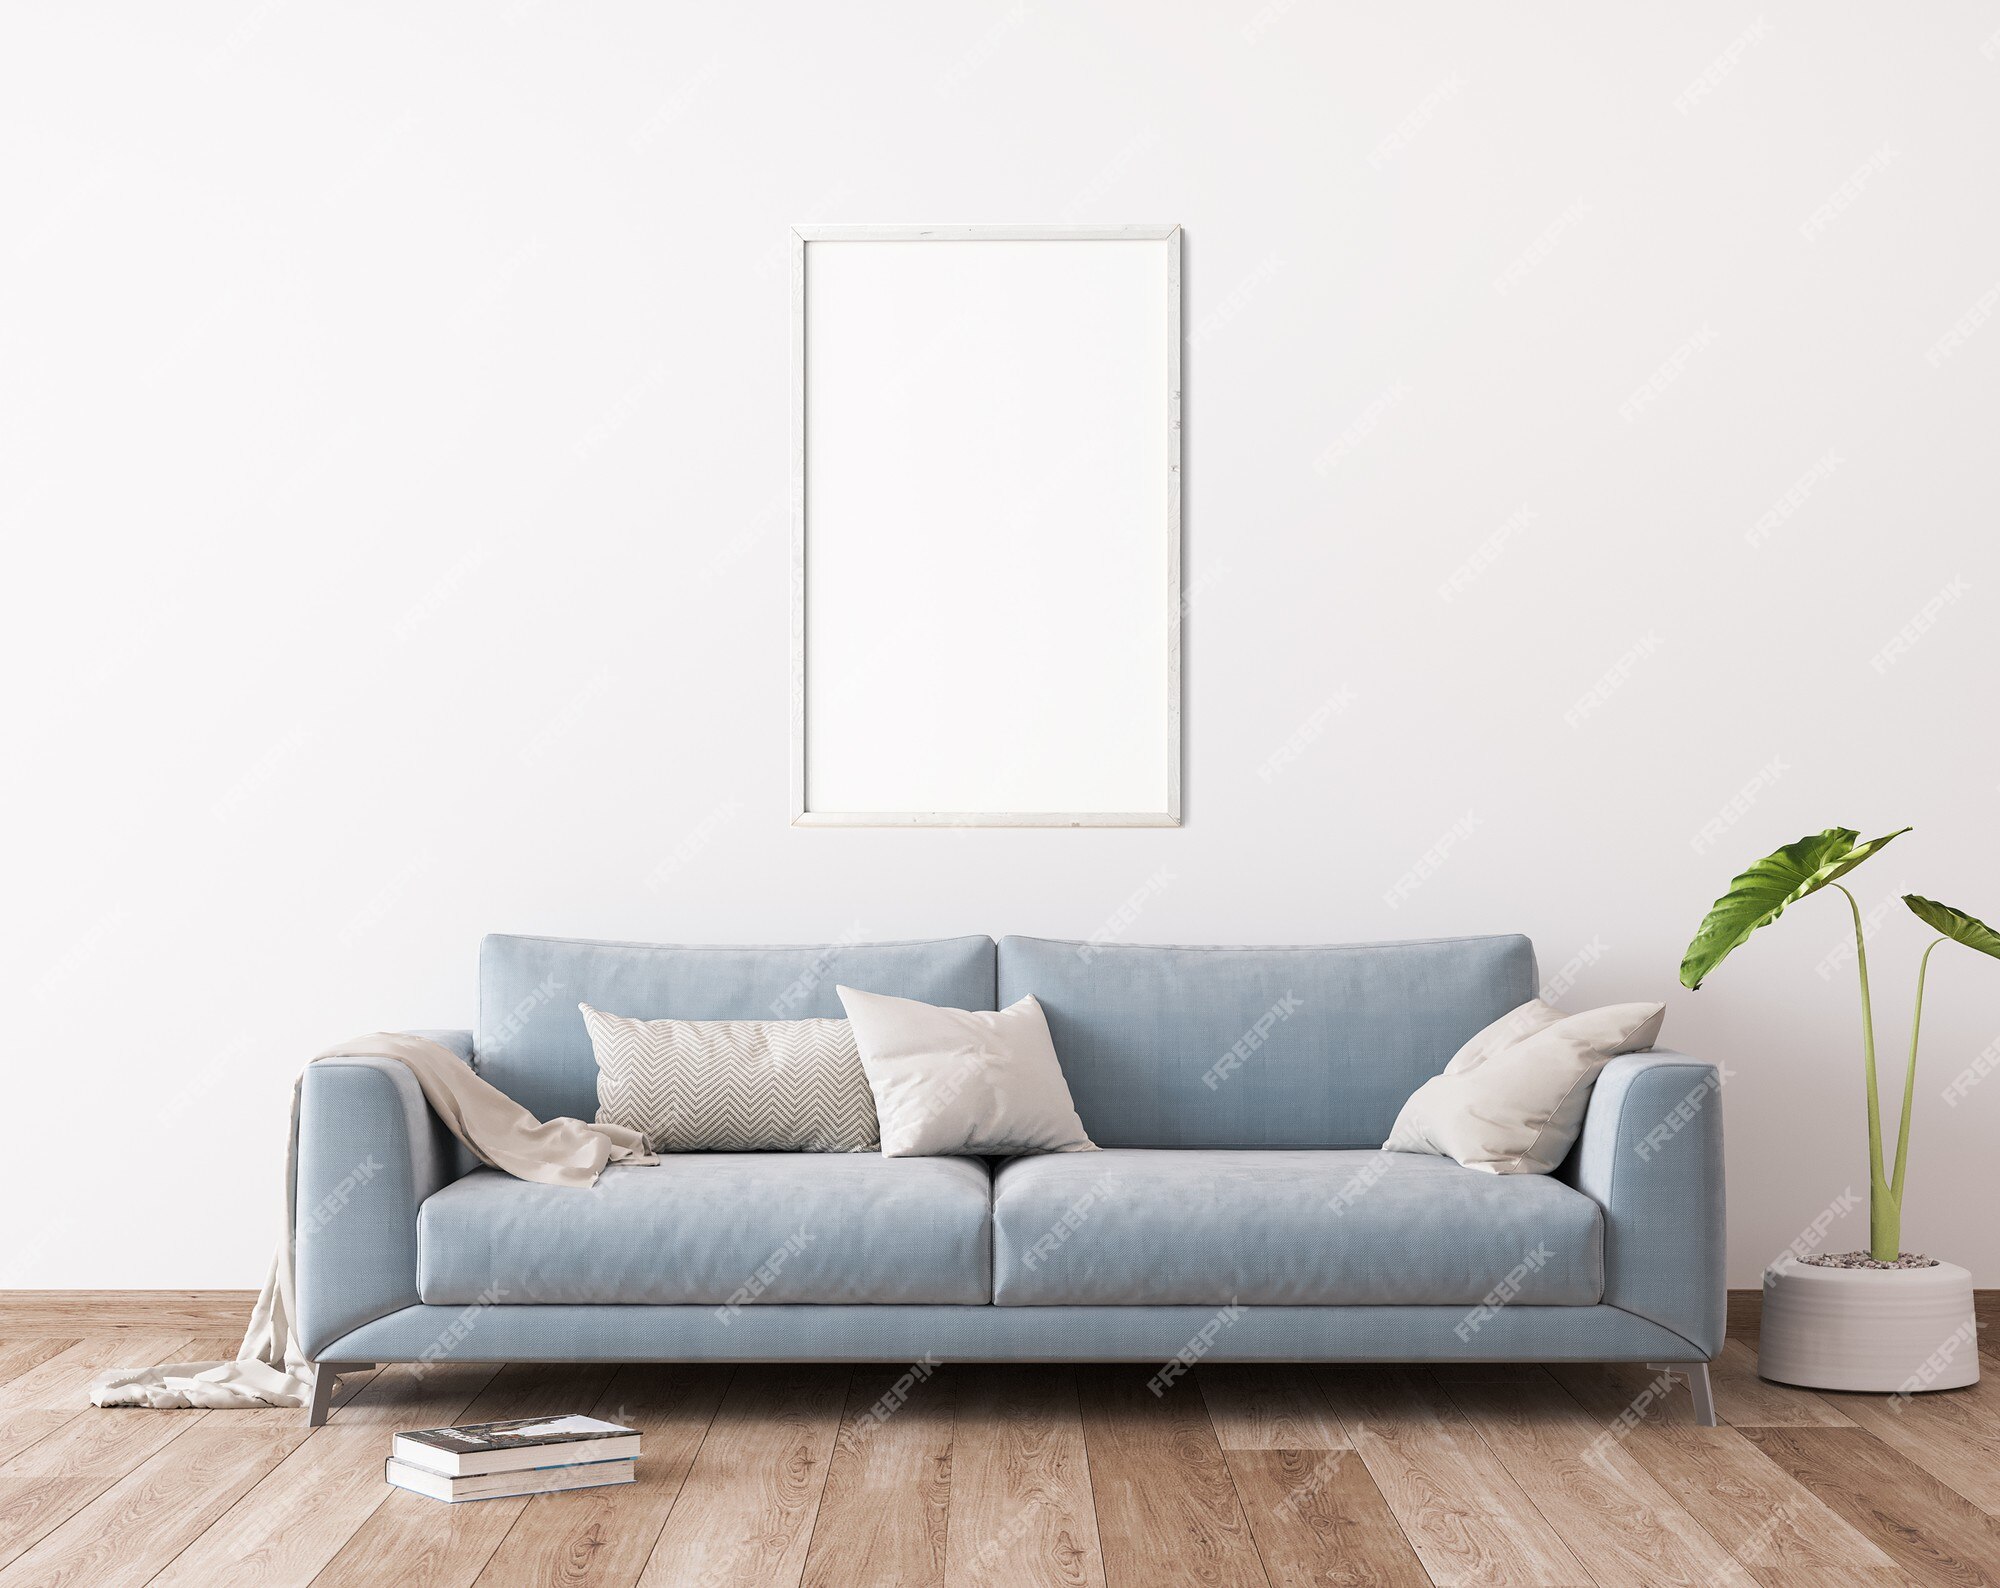 complicaciones Edredón enlazar Muebles de sala de estar interior moderno | Foto Premium